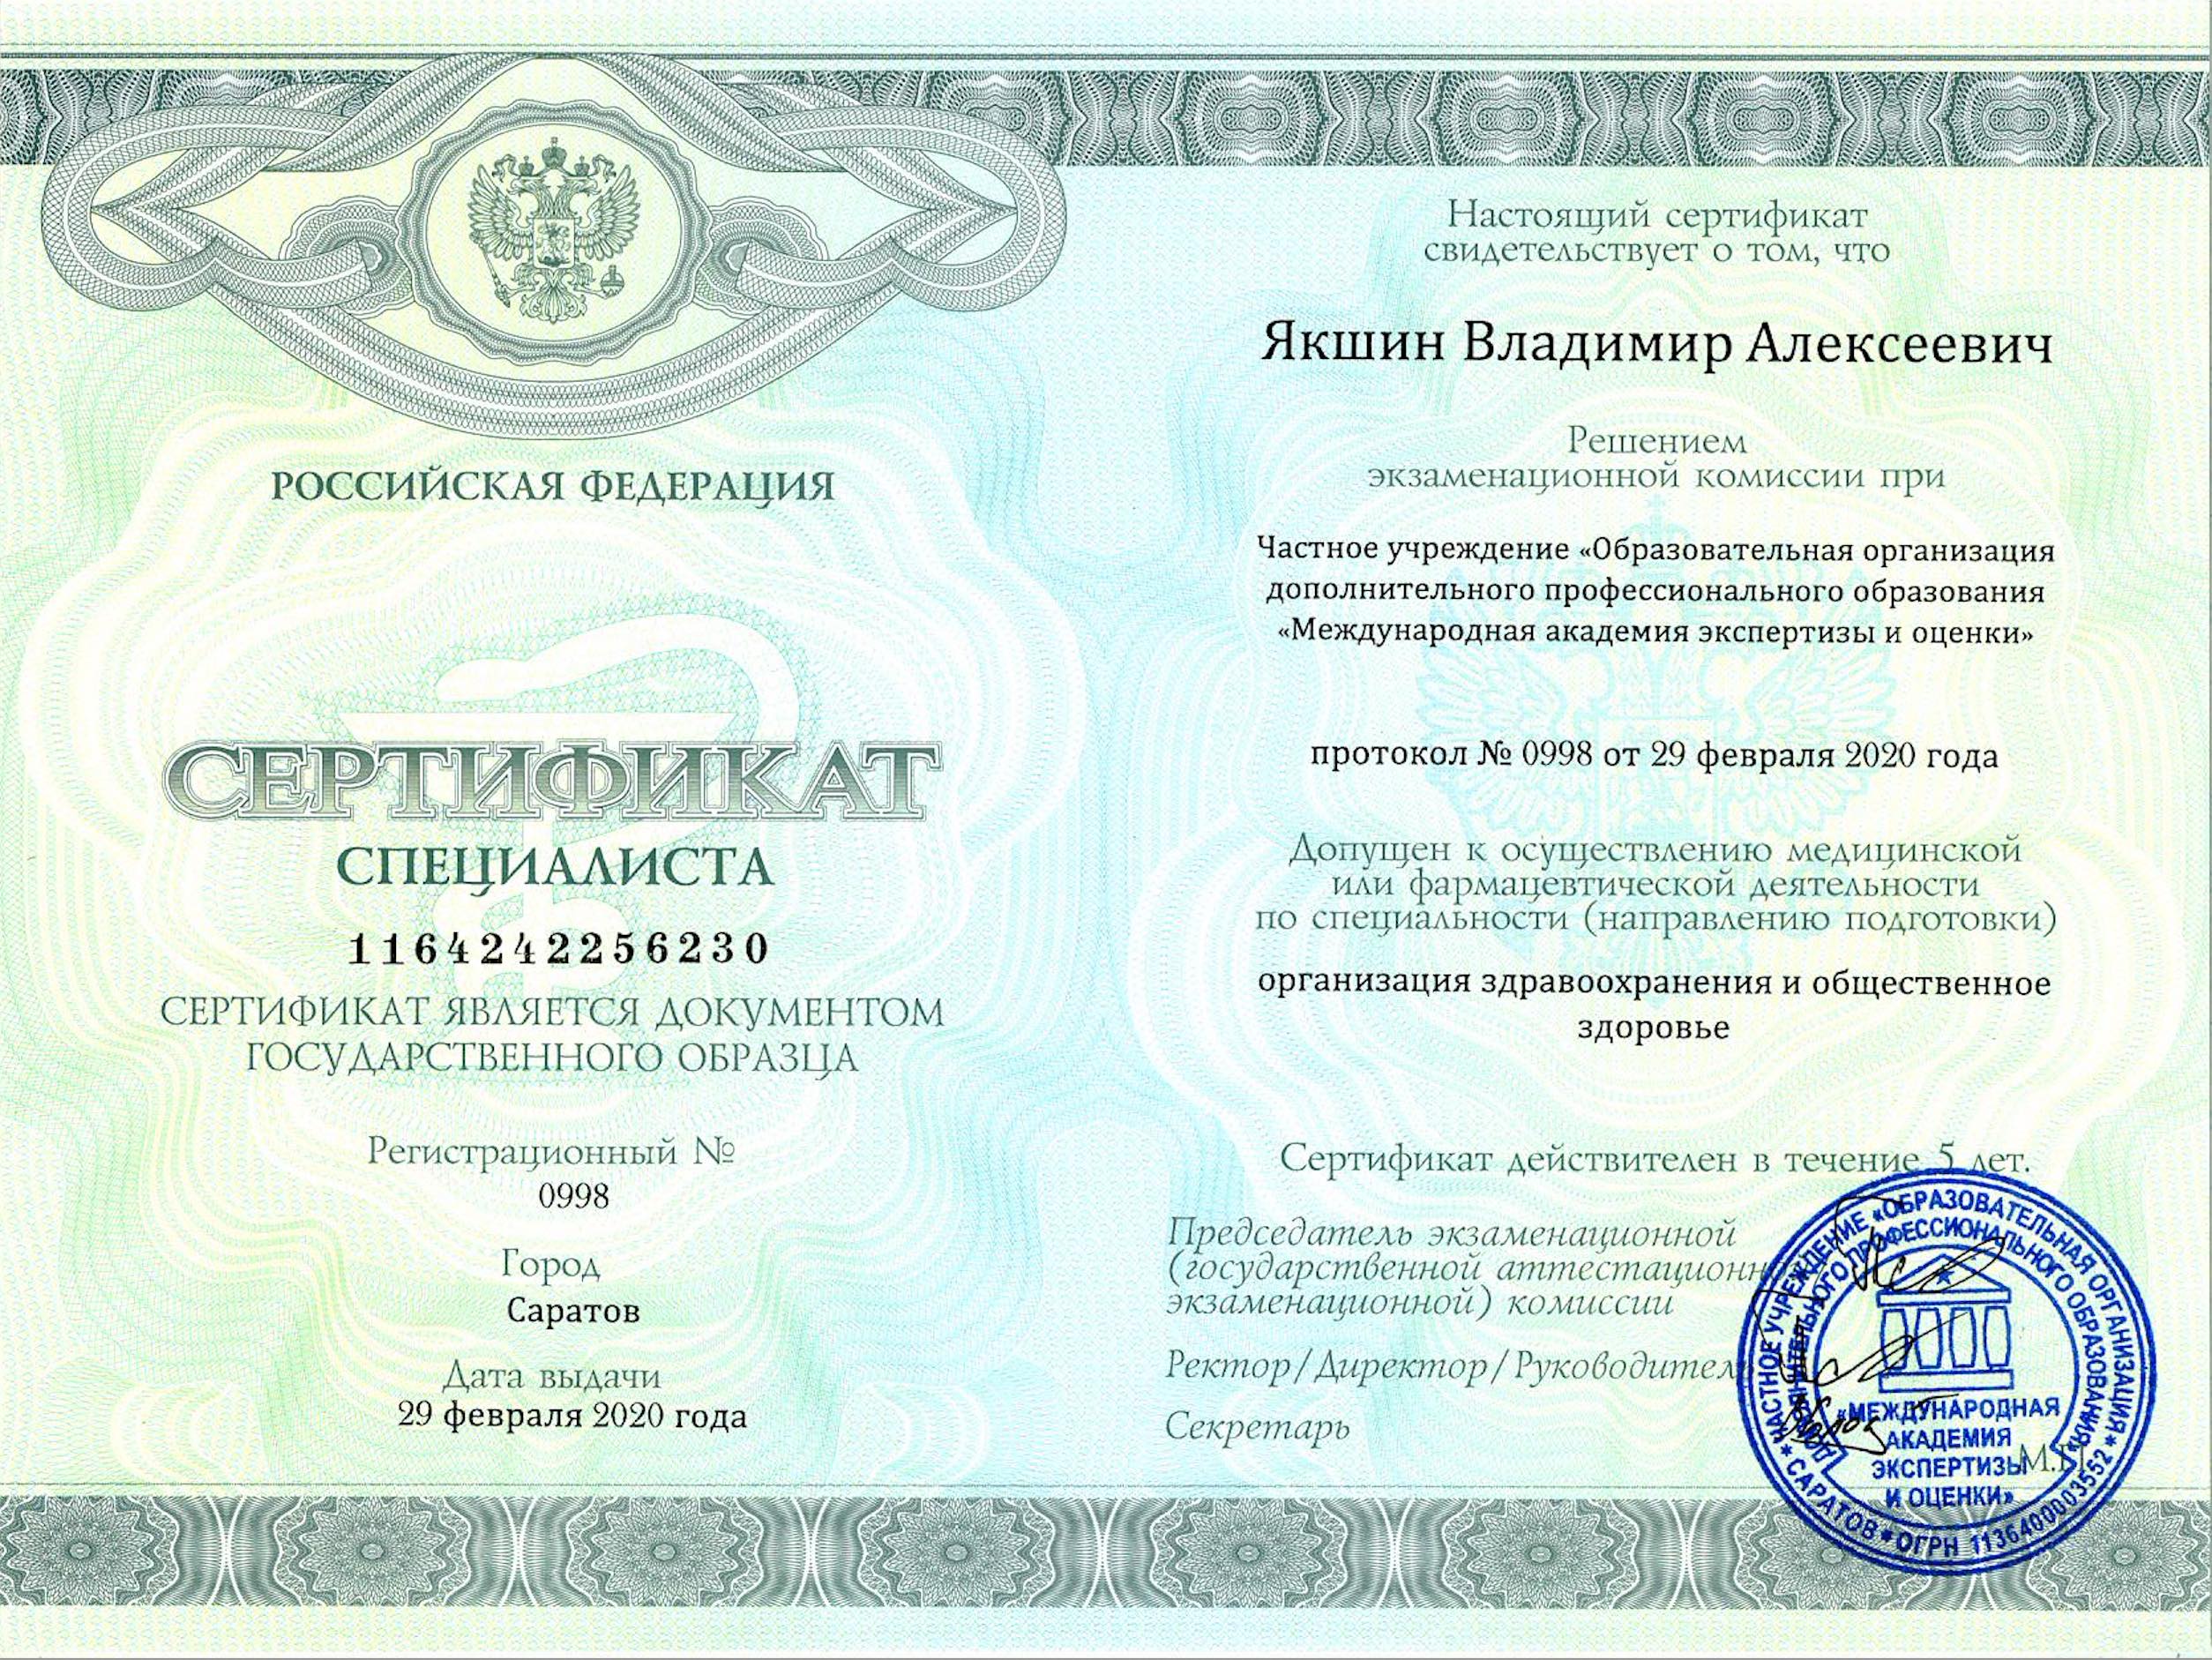 Сертификат ОЗД Якшин